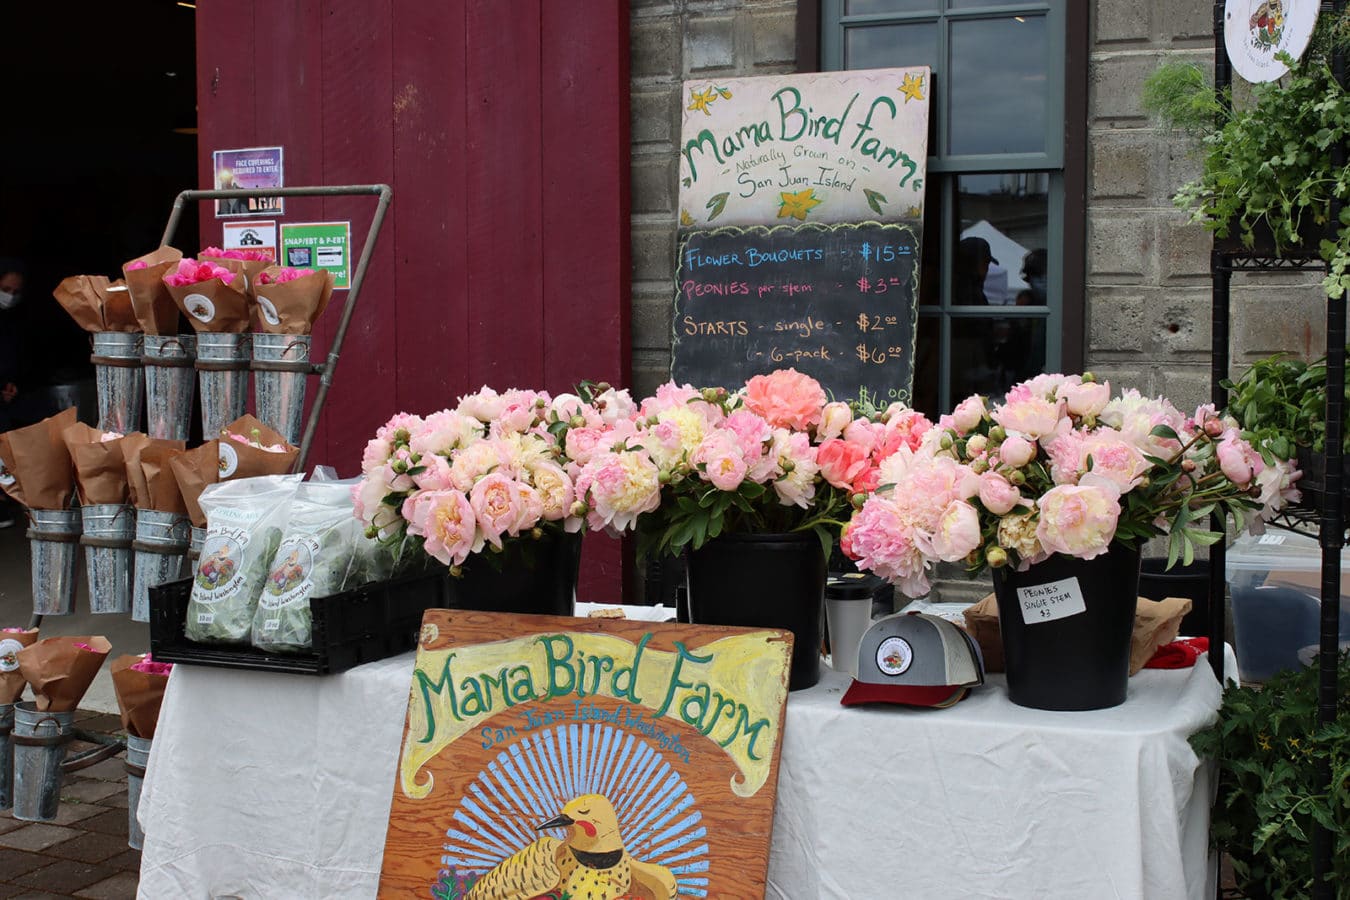 Mama Bird Farm at the Market